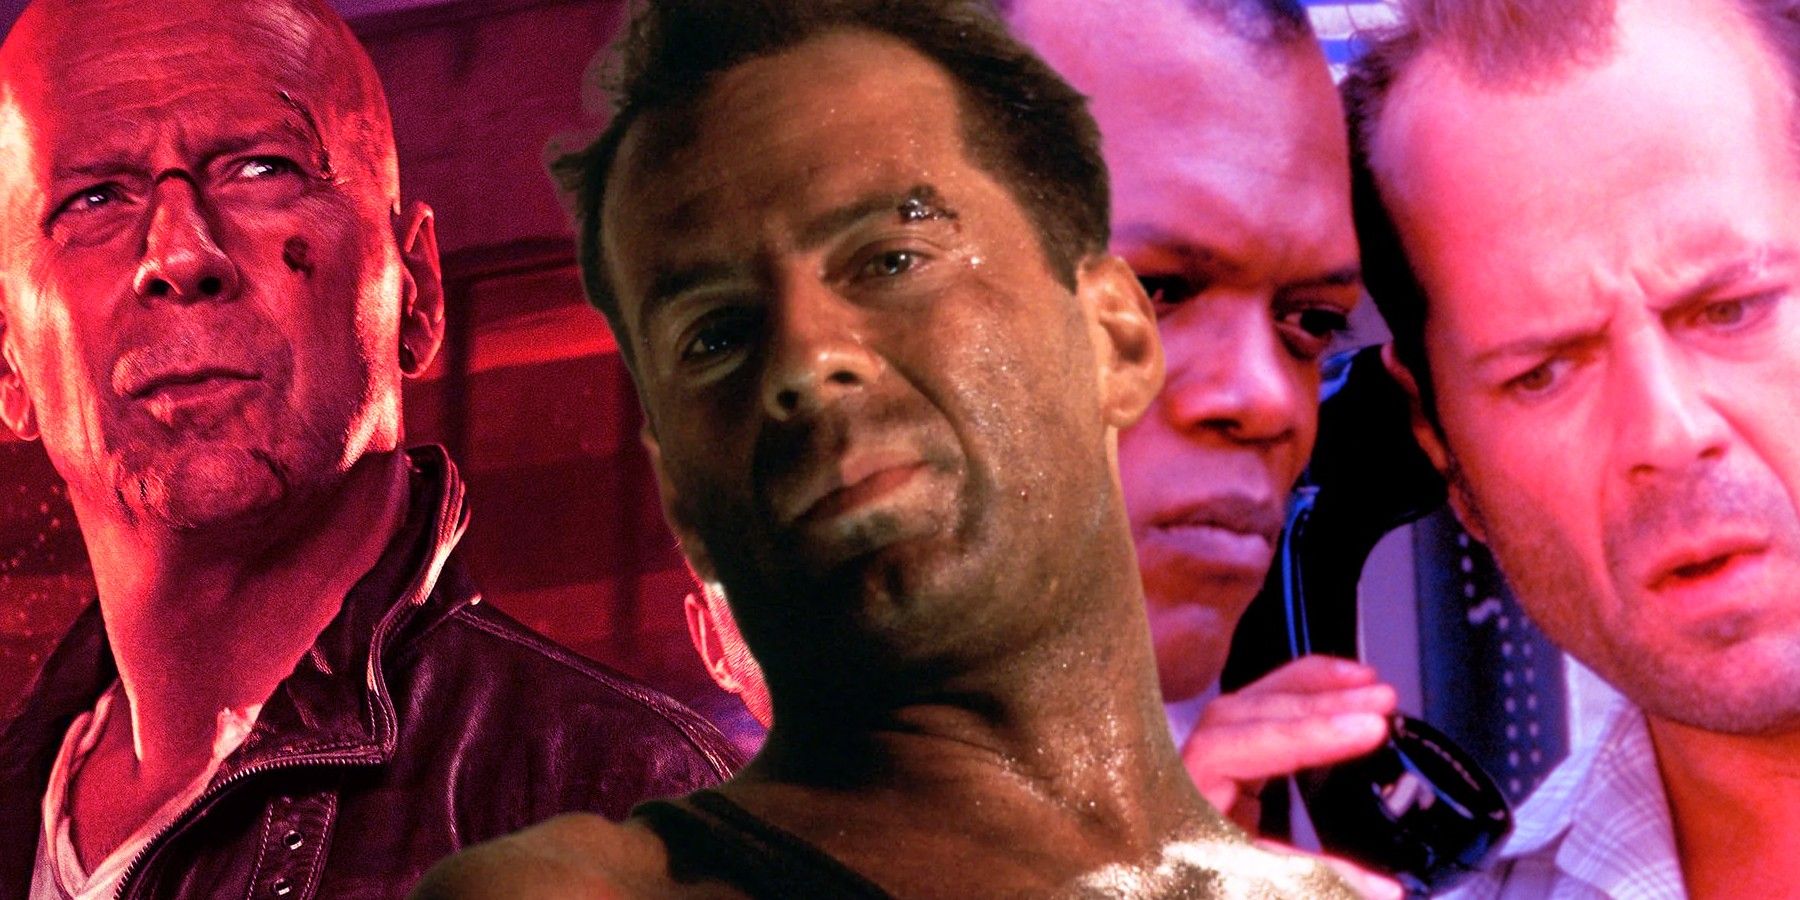 Custom image of Bruce Willis as John McClane in Die Hard